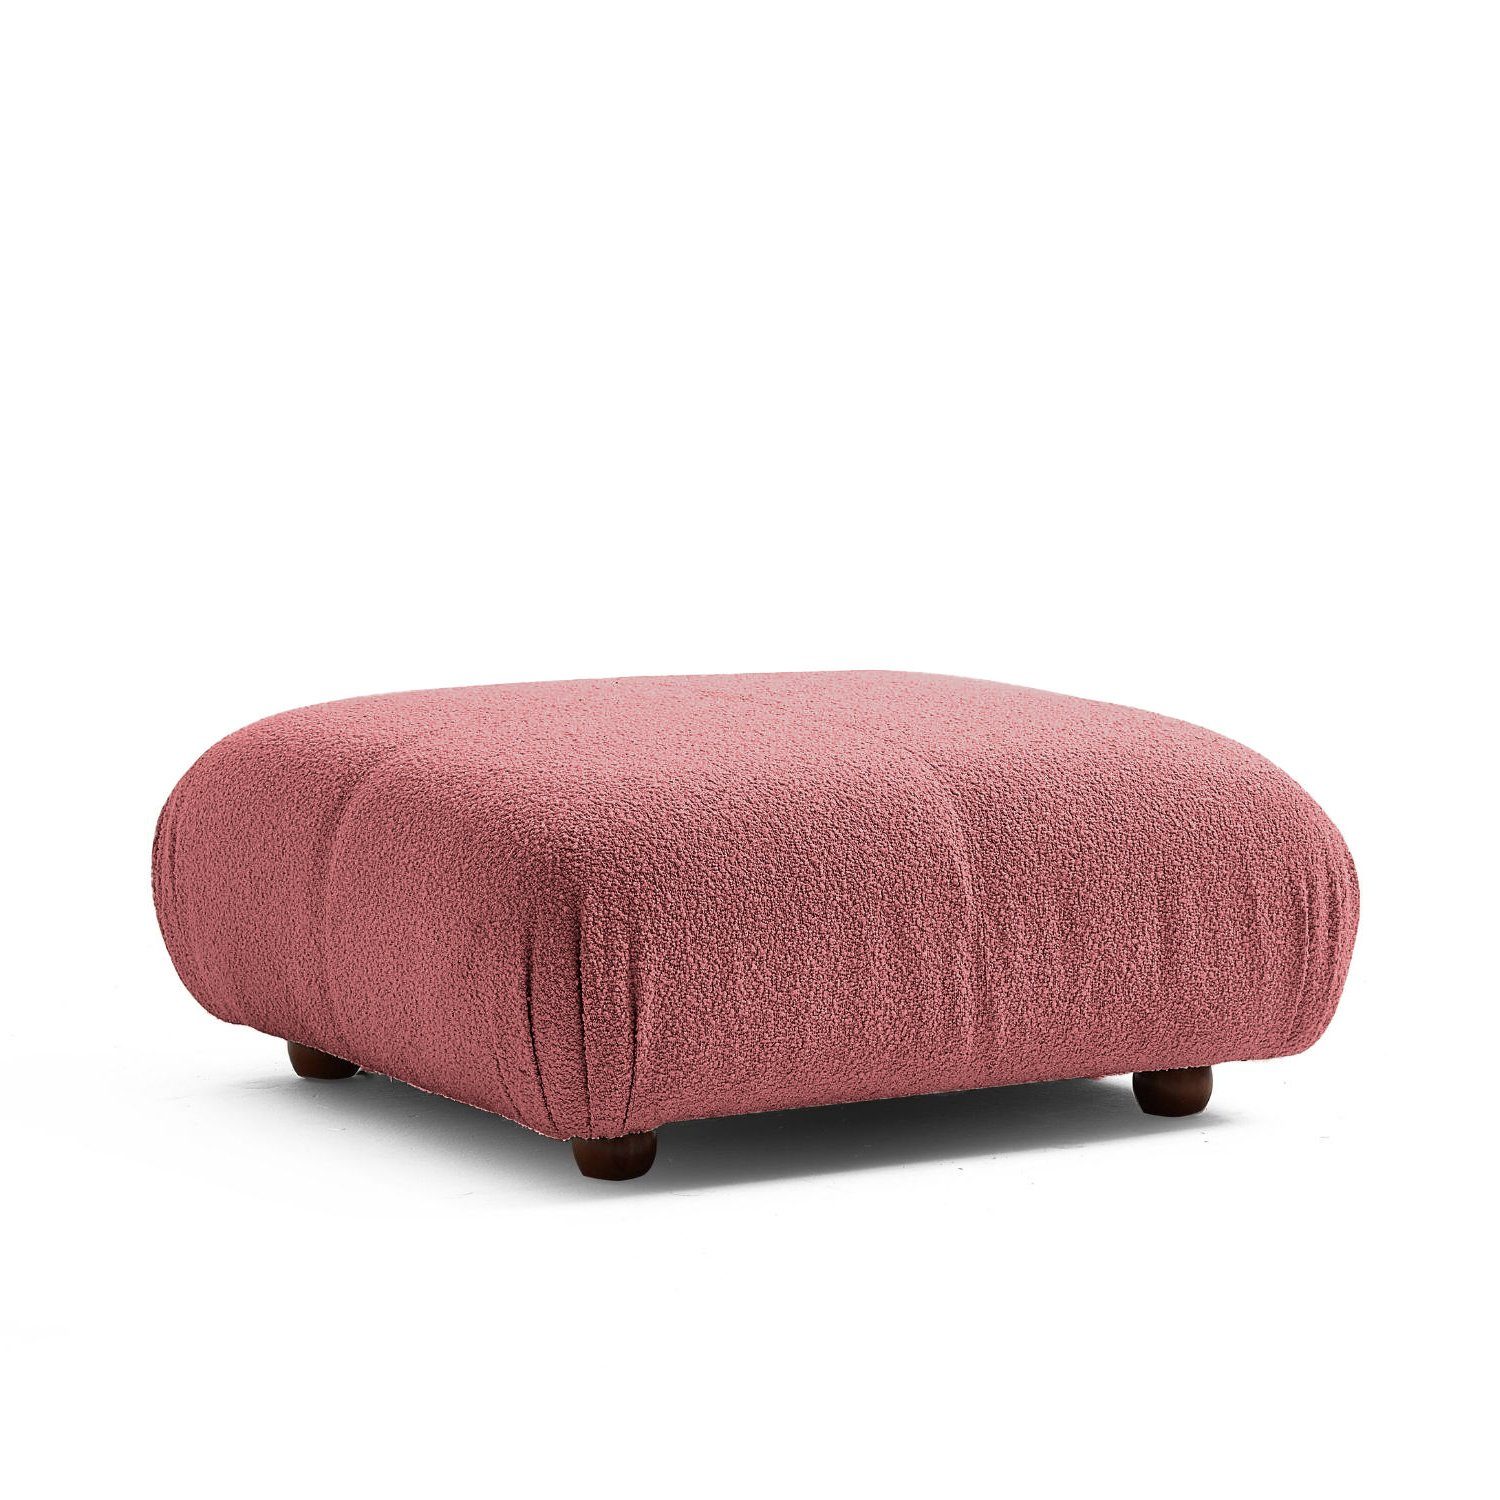 Aufbau aus Rotbraun-Lieferung und im Komfortschaum Generation Touch Sofa enthalten! Sitzmöbel Preis neueste me Knuffiges